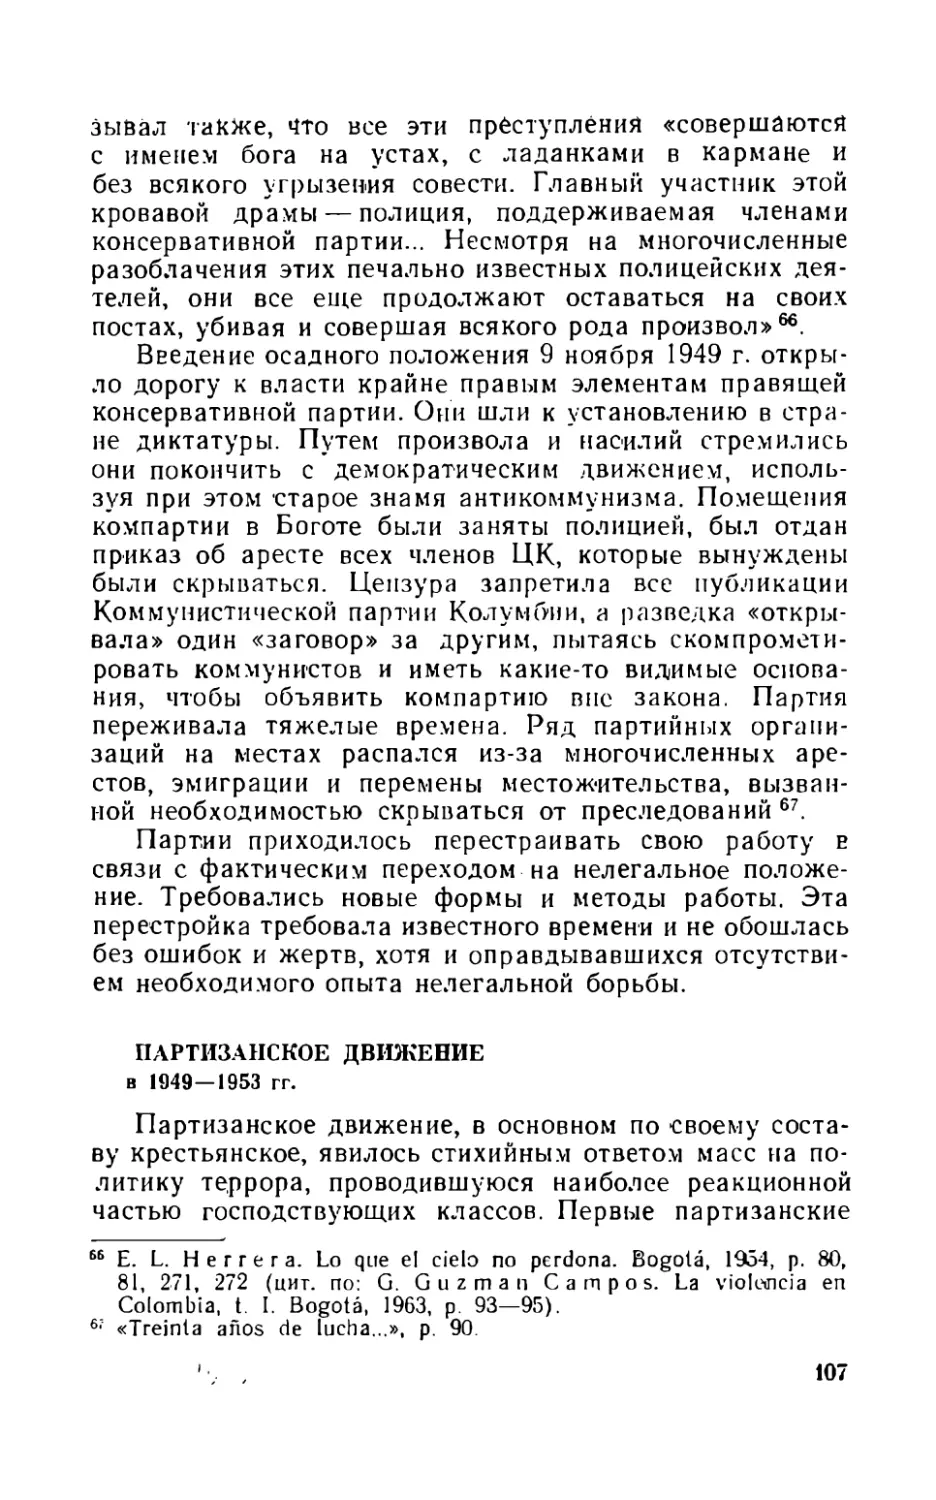 Партизанское движение в 1949-1953 гг